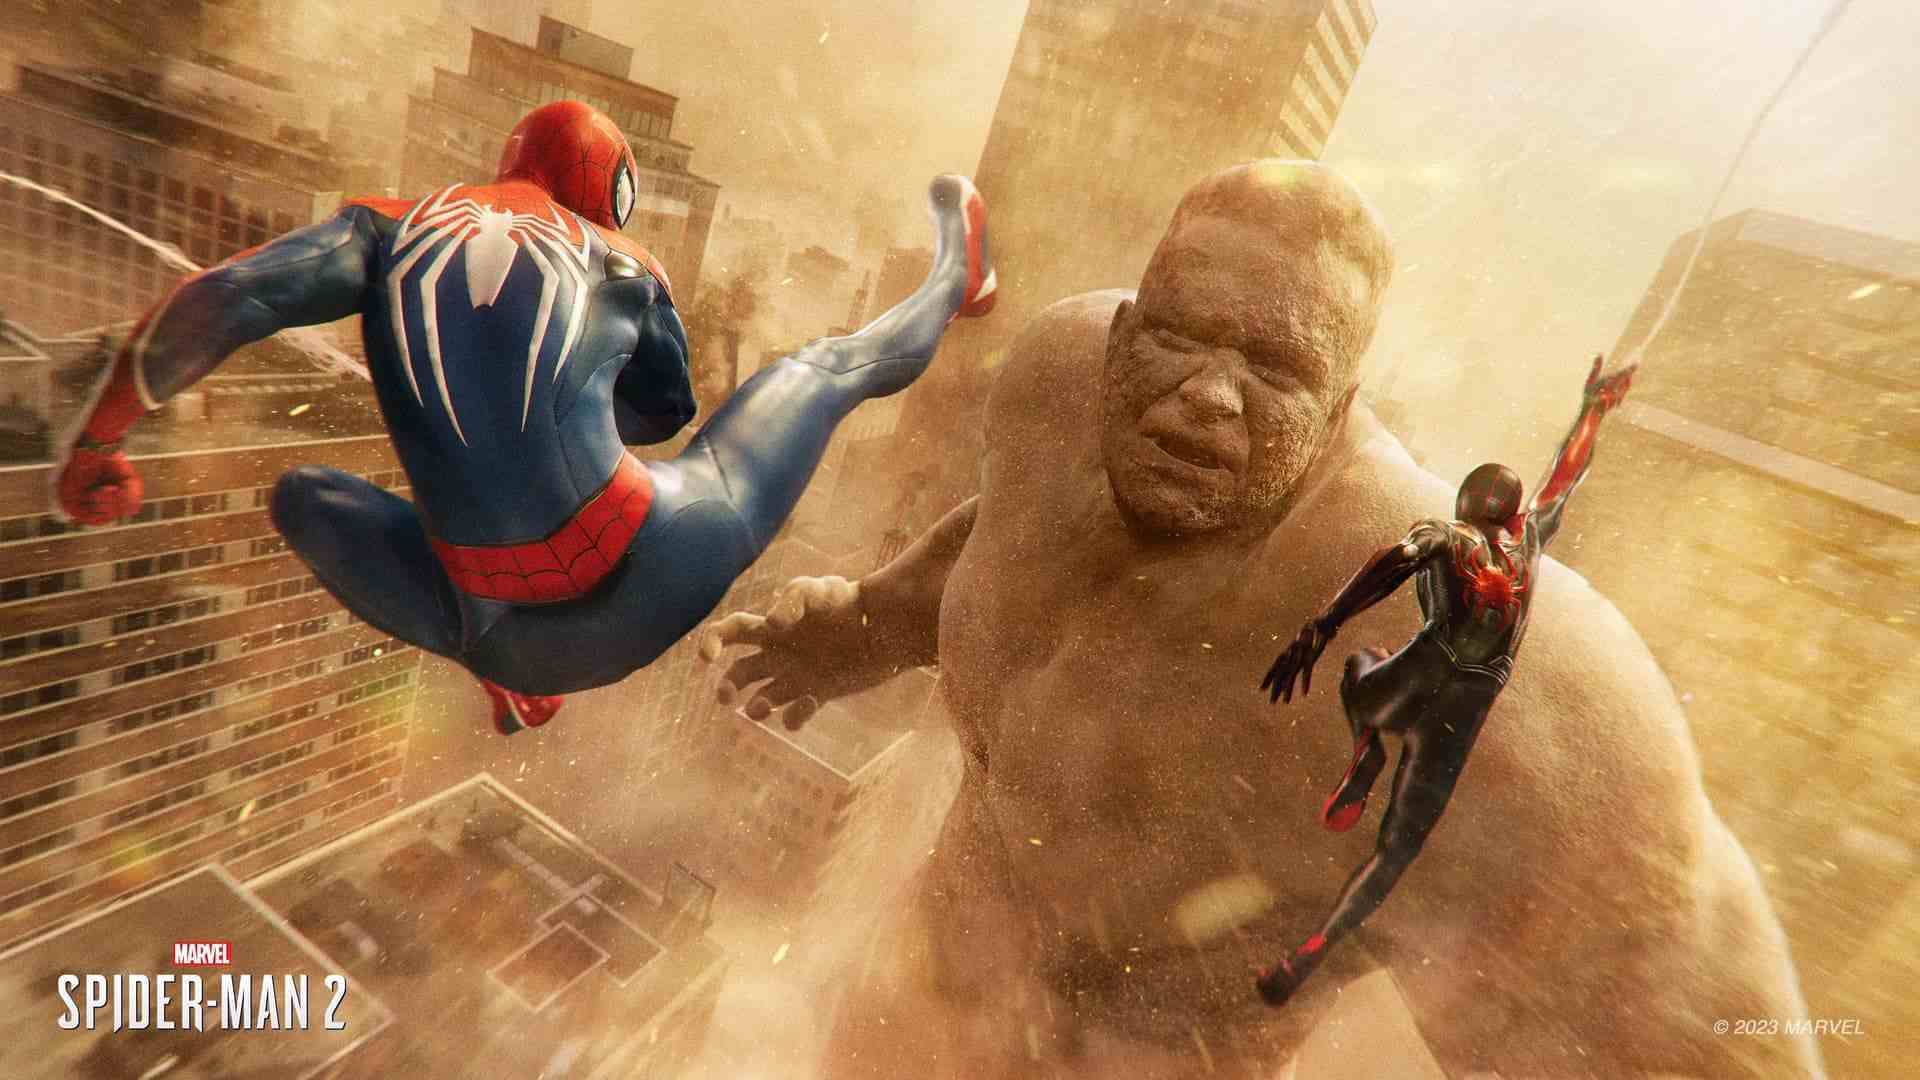 Peter Parker'ın Örümcek Adamı ve Miles Morales'in Örümcek Adamı, Kum Adam Flint Marko ile dövüşüyor.